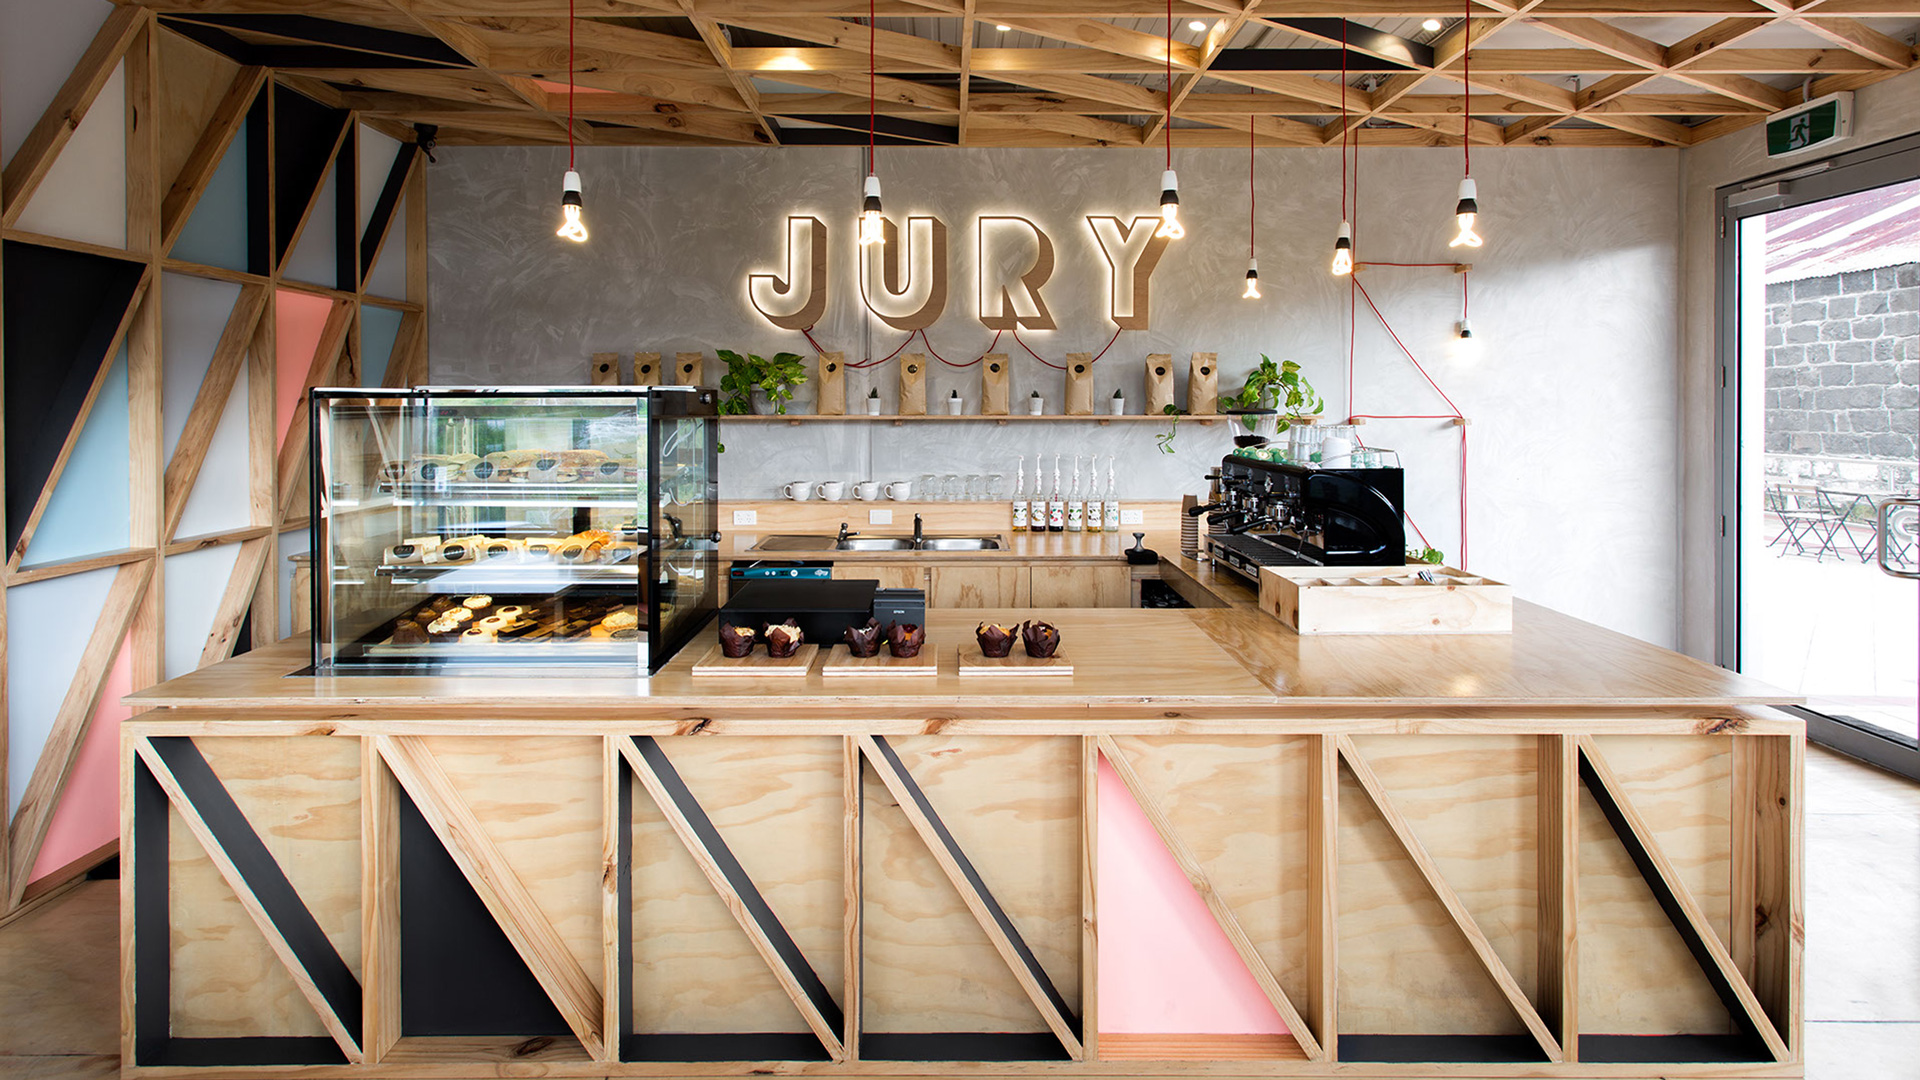 Jury 4 Best Cafe Design In The World Biasol Interior